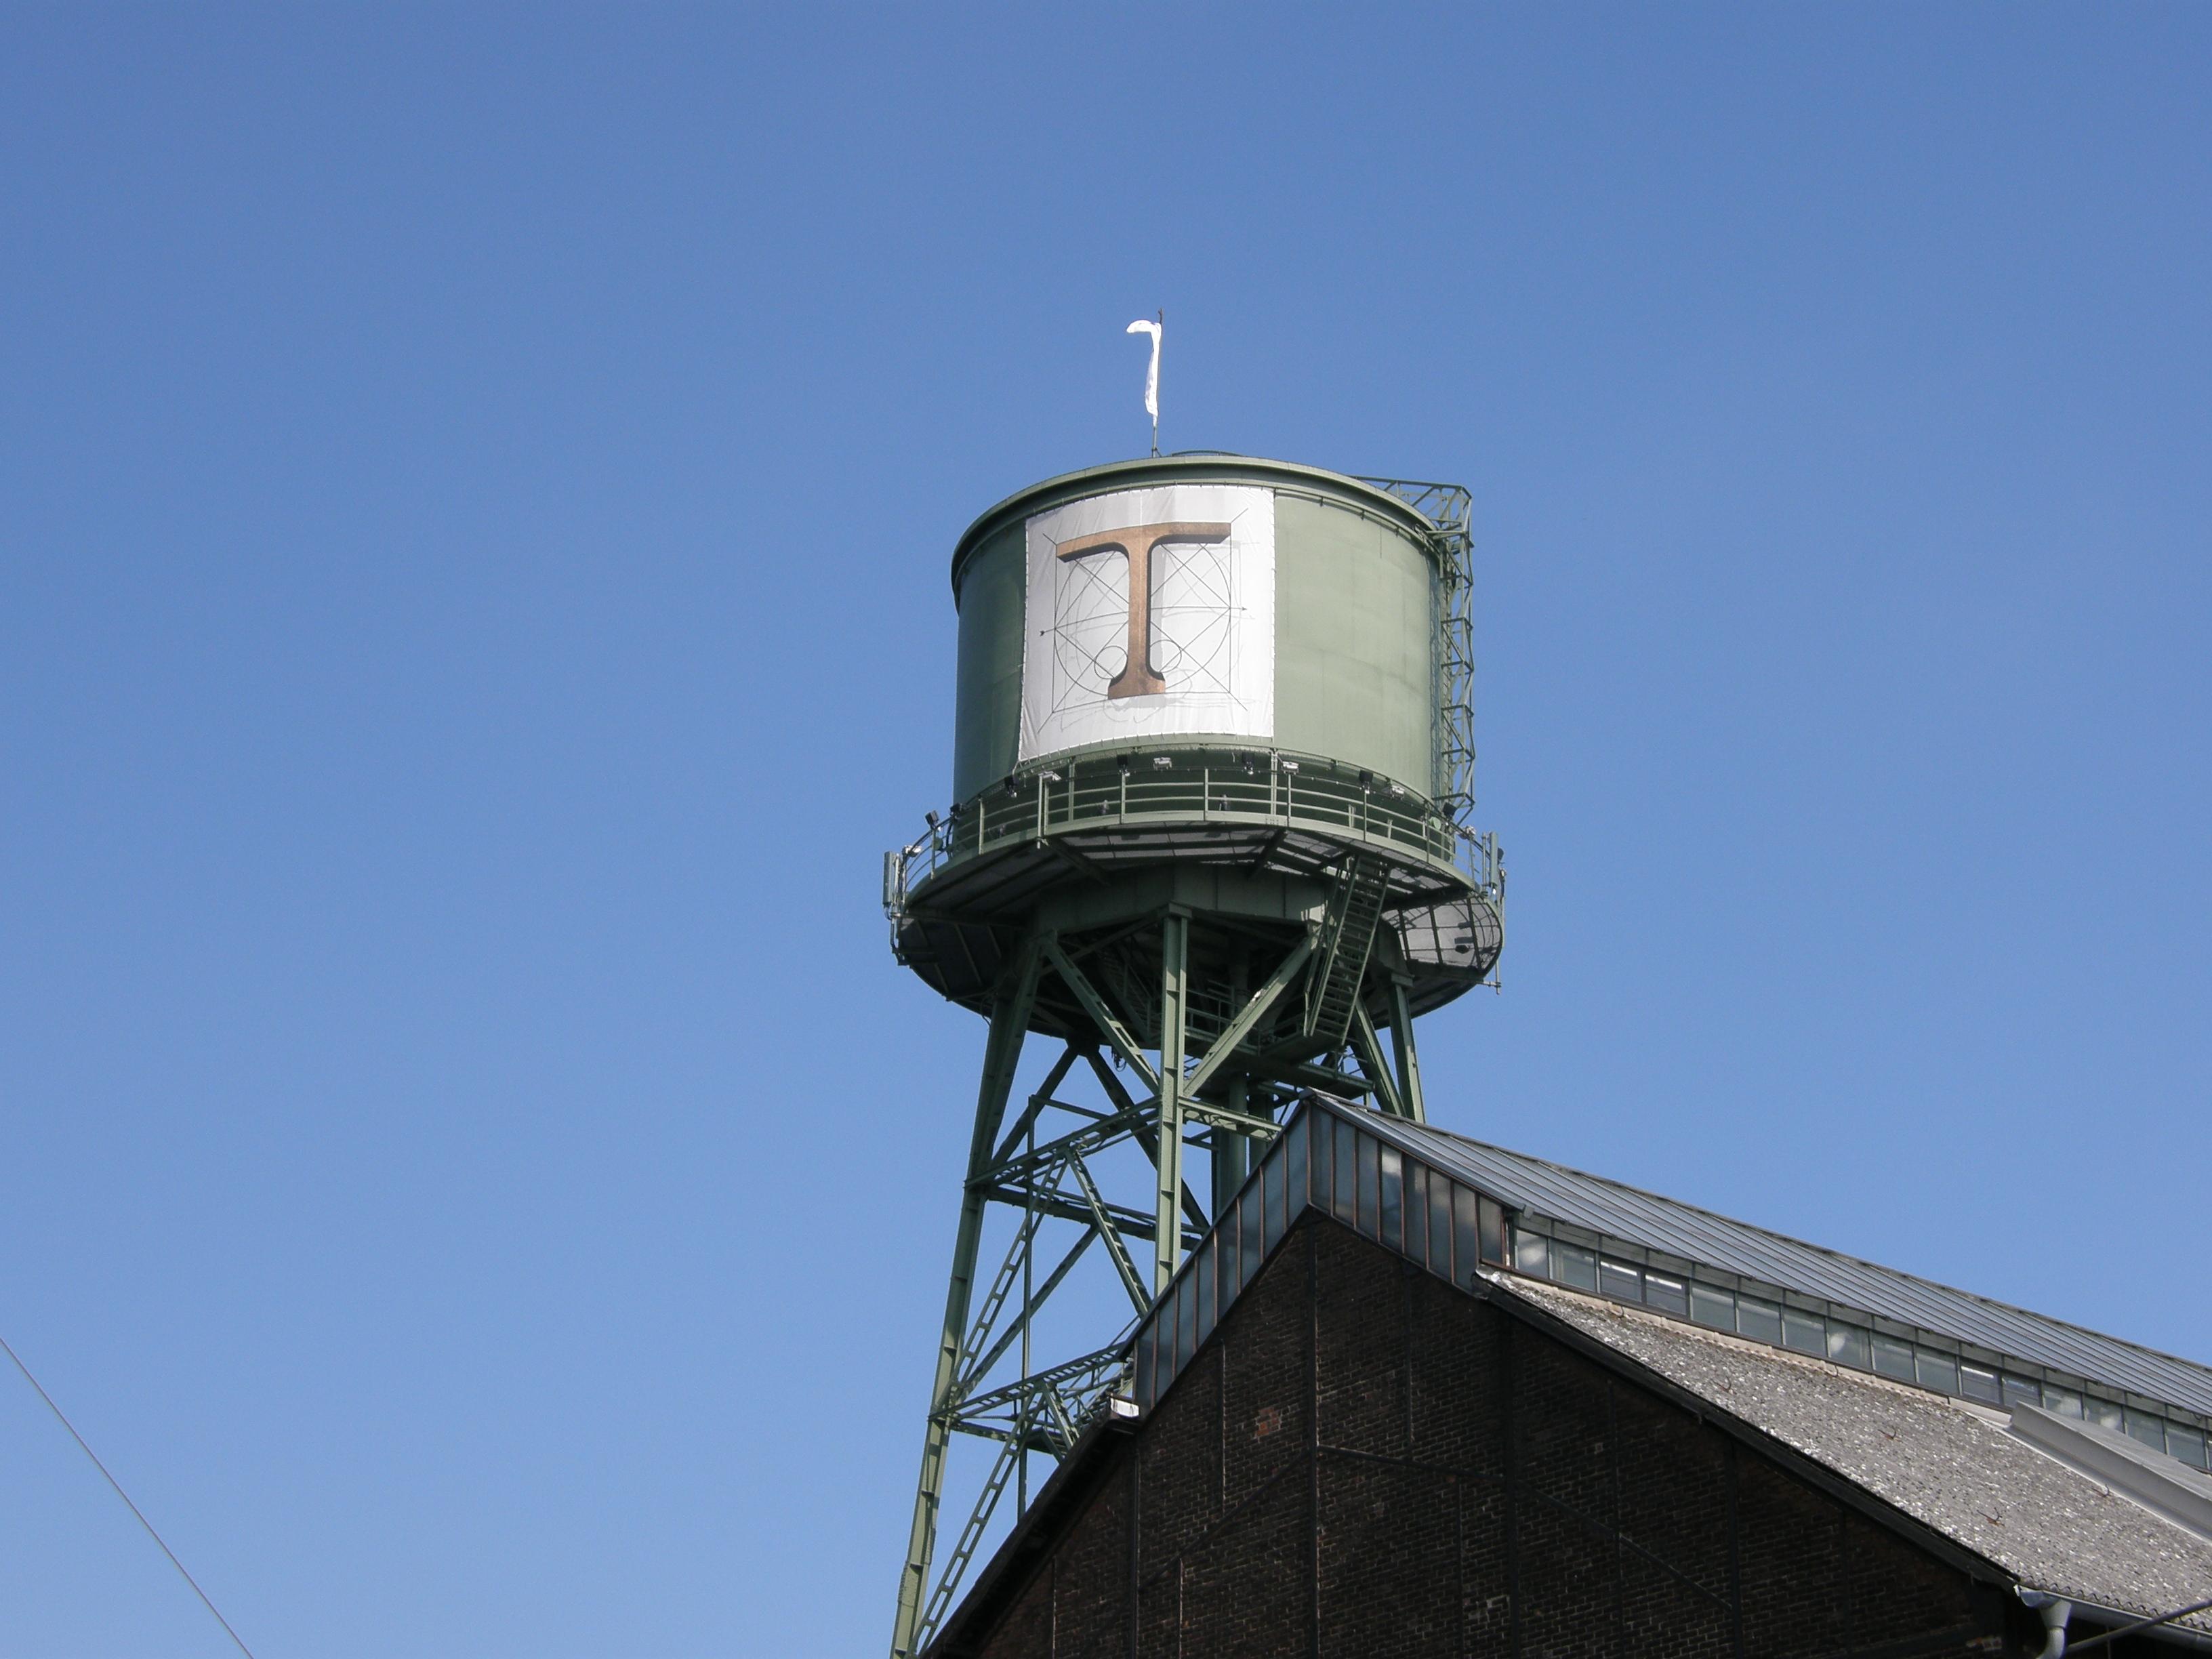 Jahrhunderthalle in Bochum Wasserturm mit Plakat der Ruhrtrienale